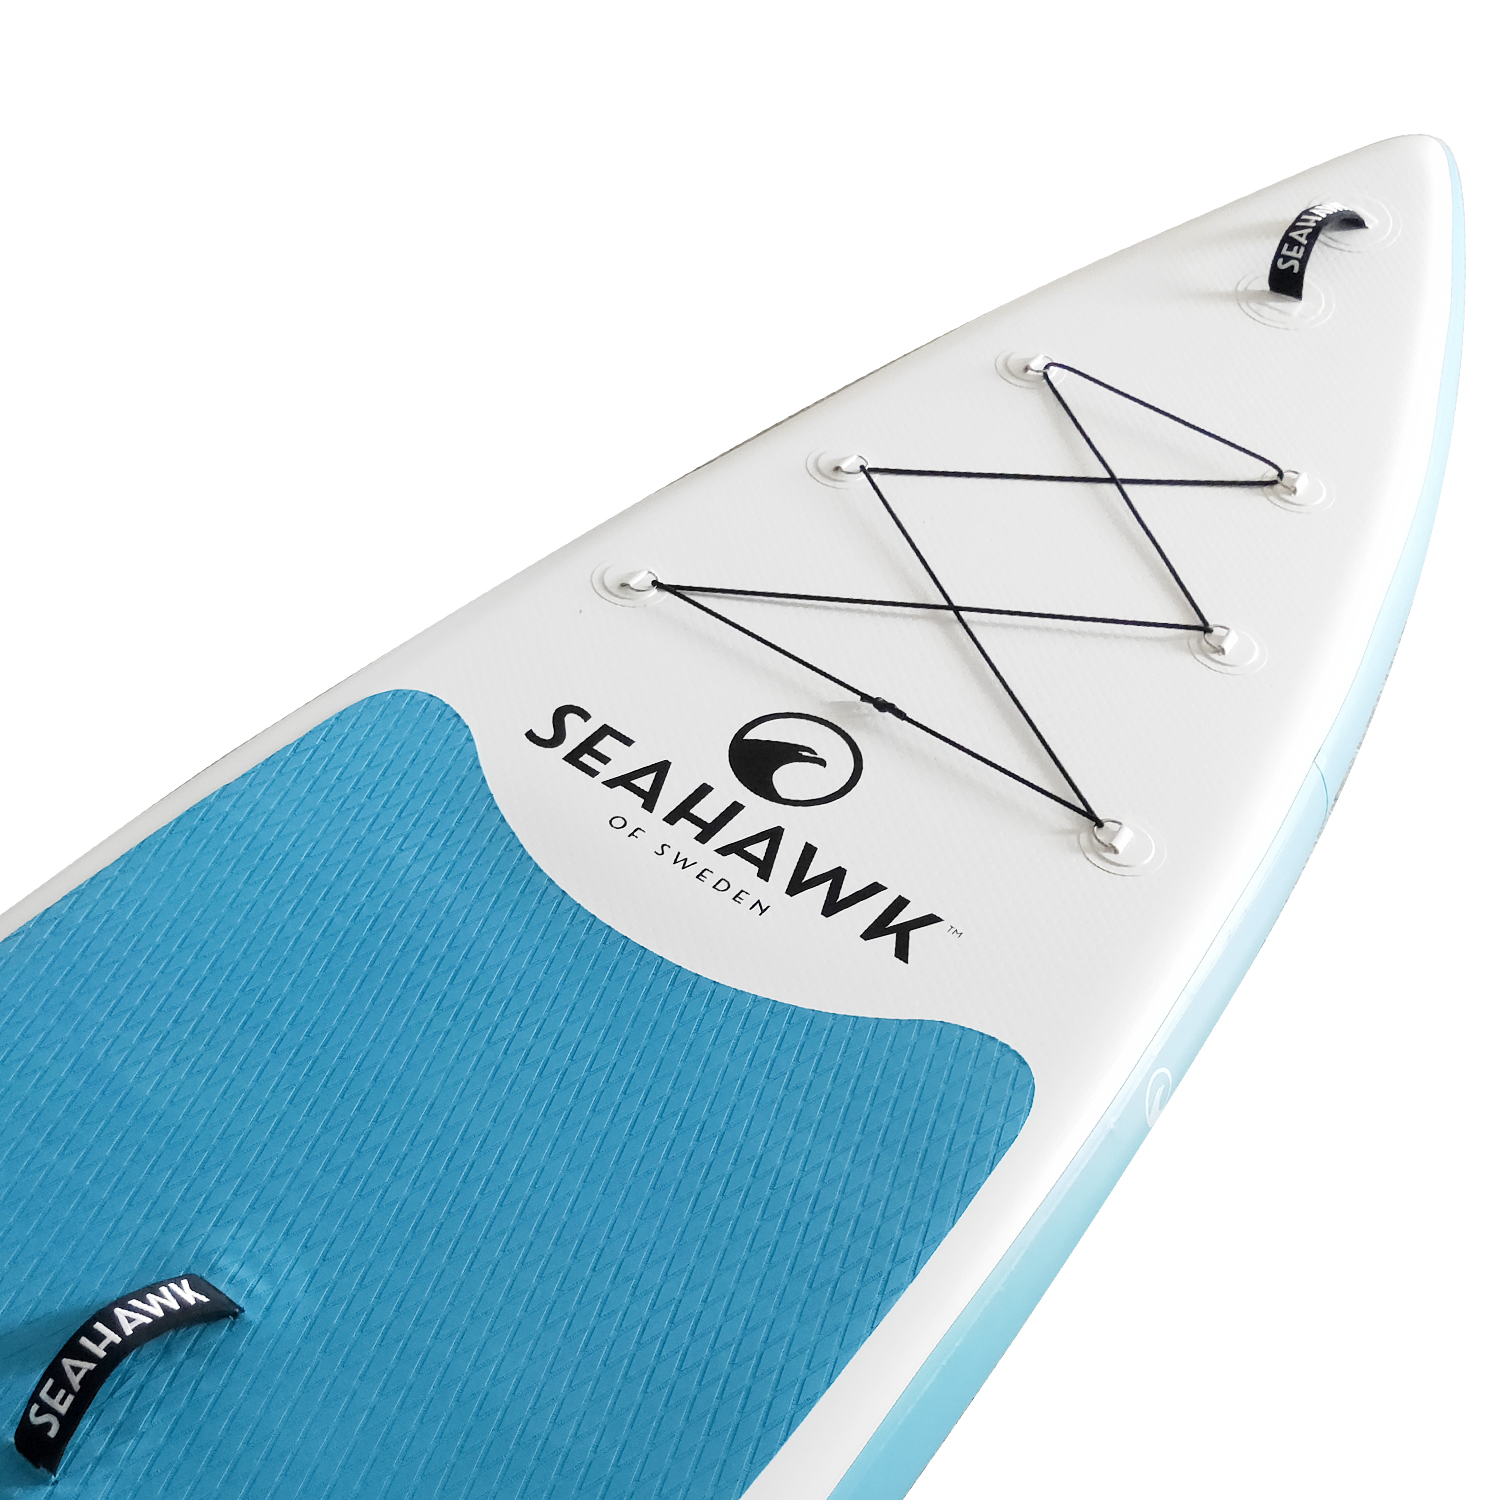 Seahawk 12.6 Waves - Paket